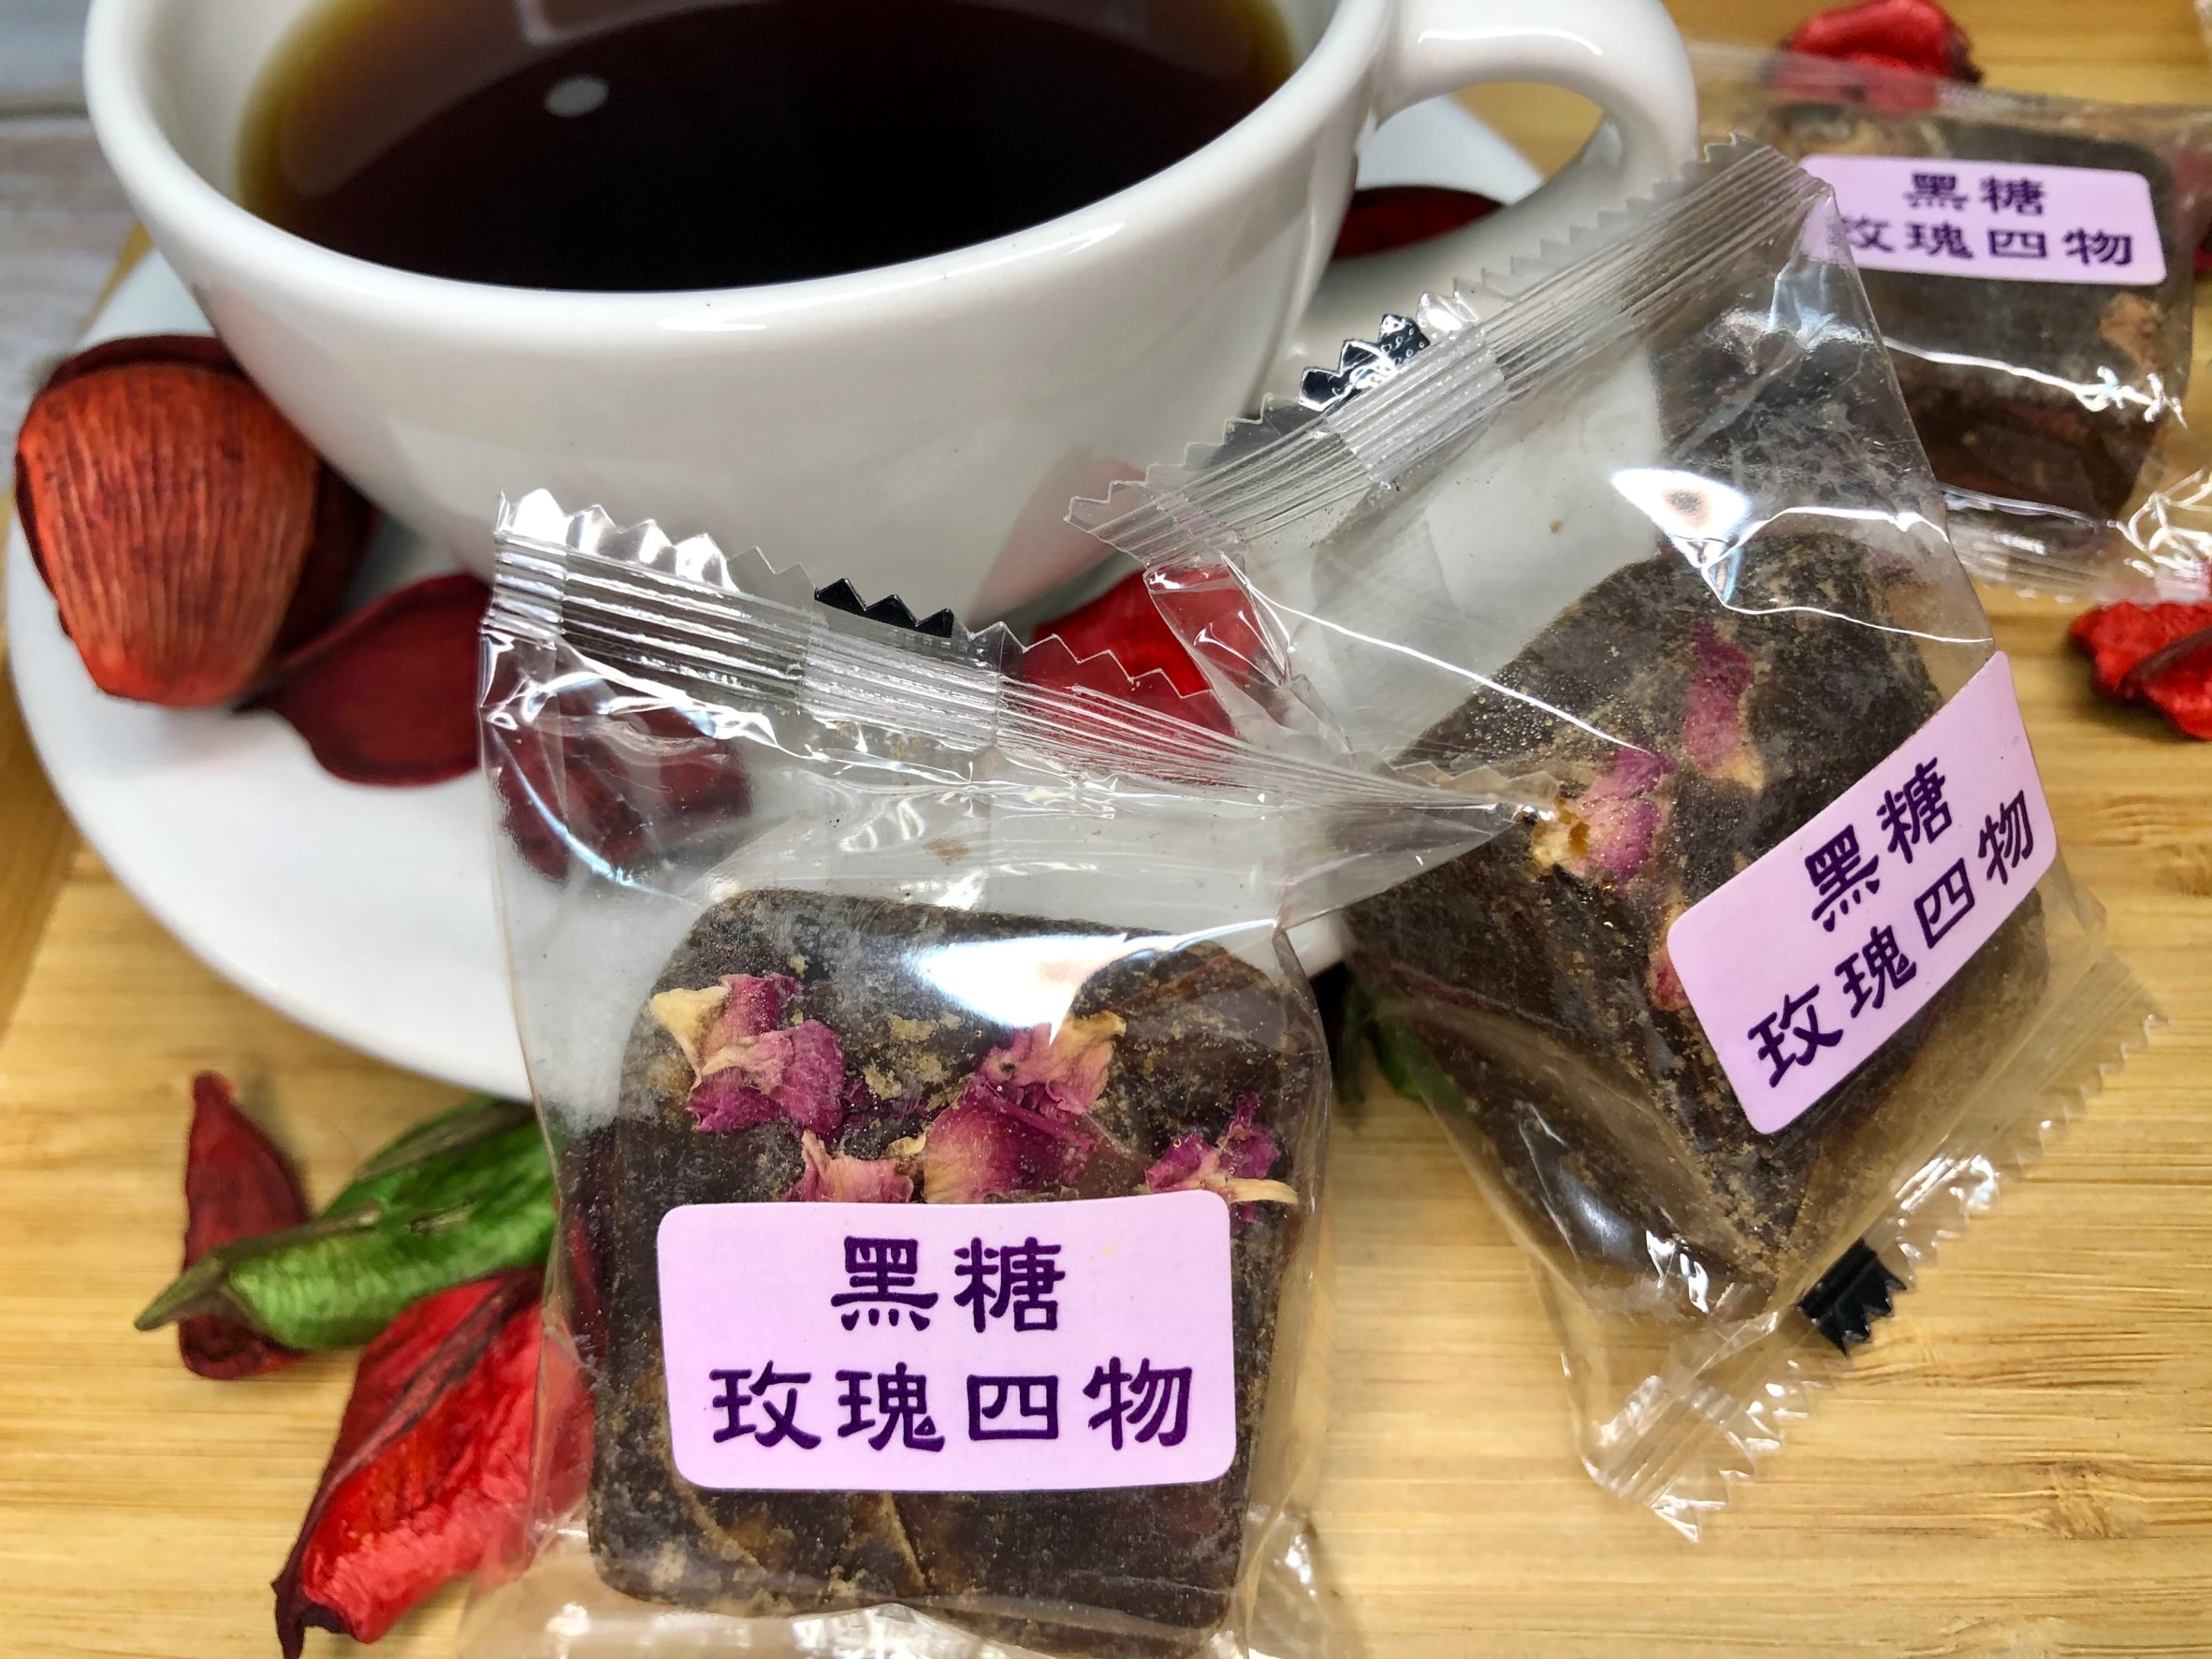 海錦富黑糖茶磚 (3包$600含運)